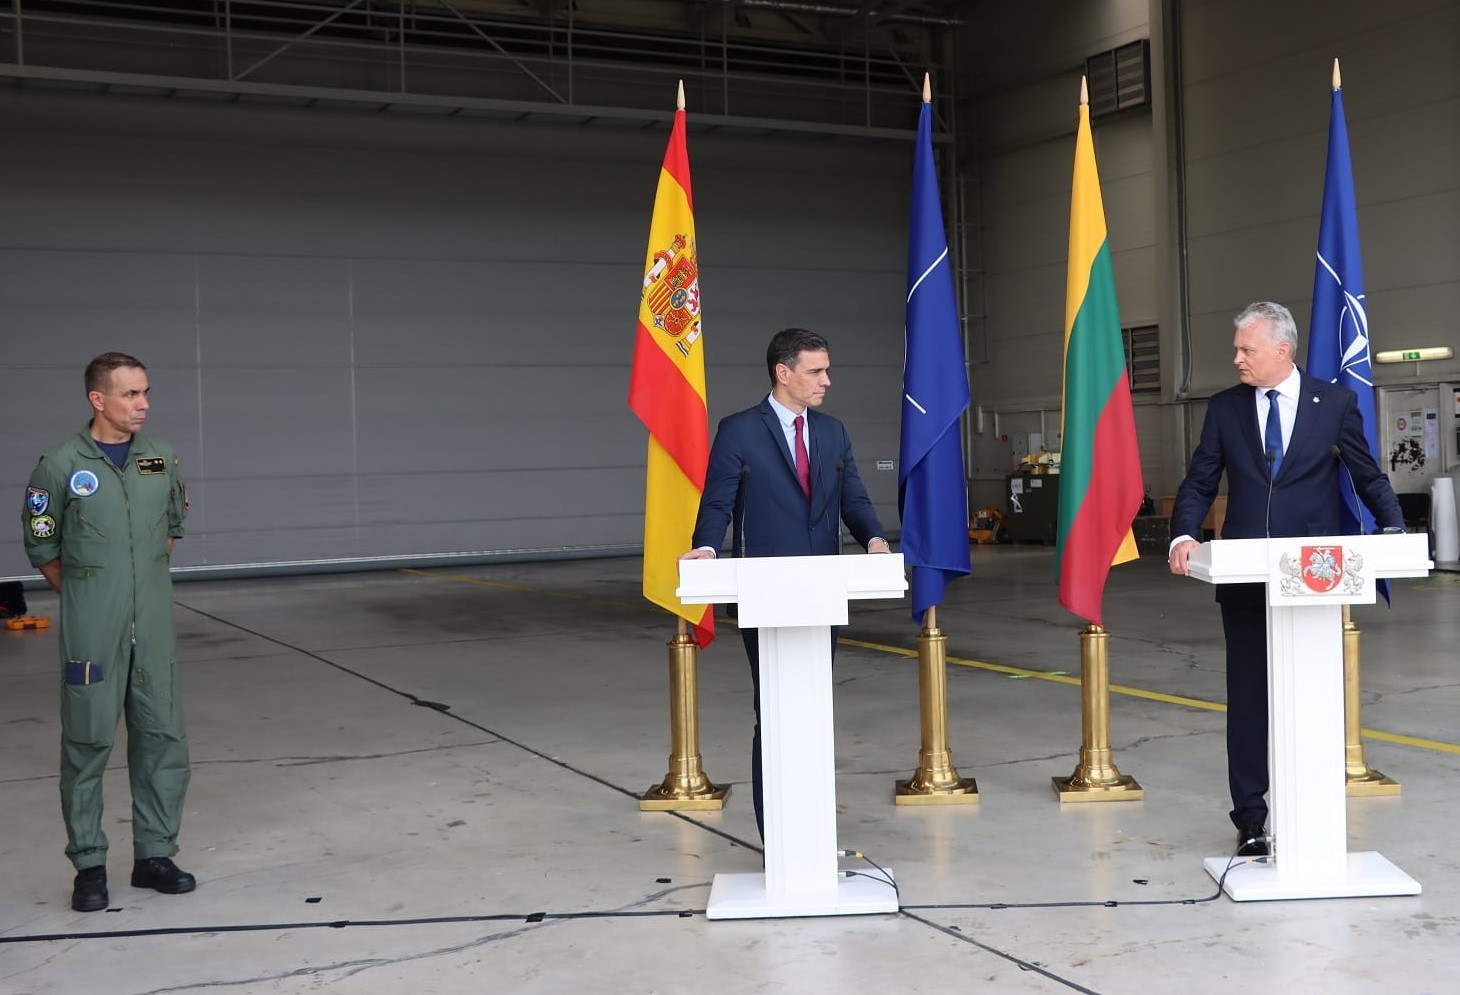 Declaración conjunta Presidente español y lituano